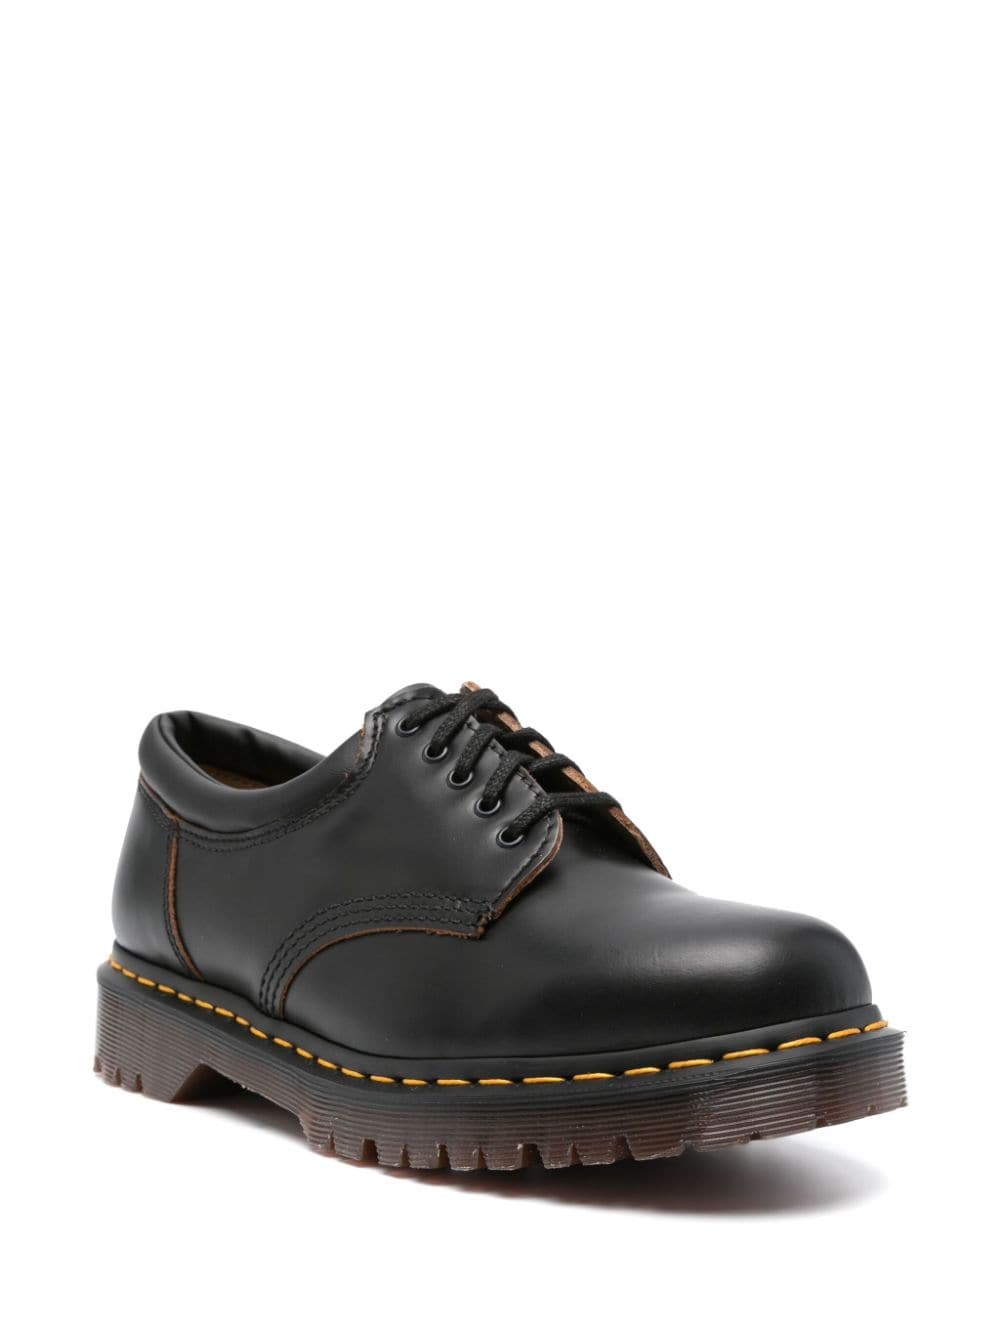 Dr. Martens 8053 leather derby shoes - Zwart